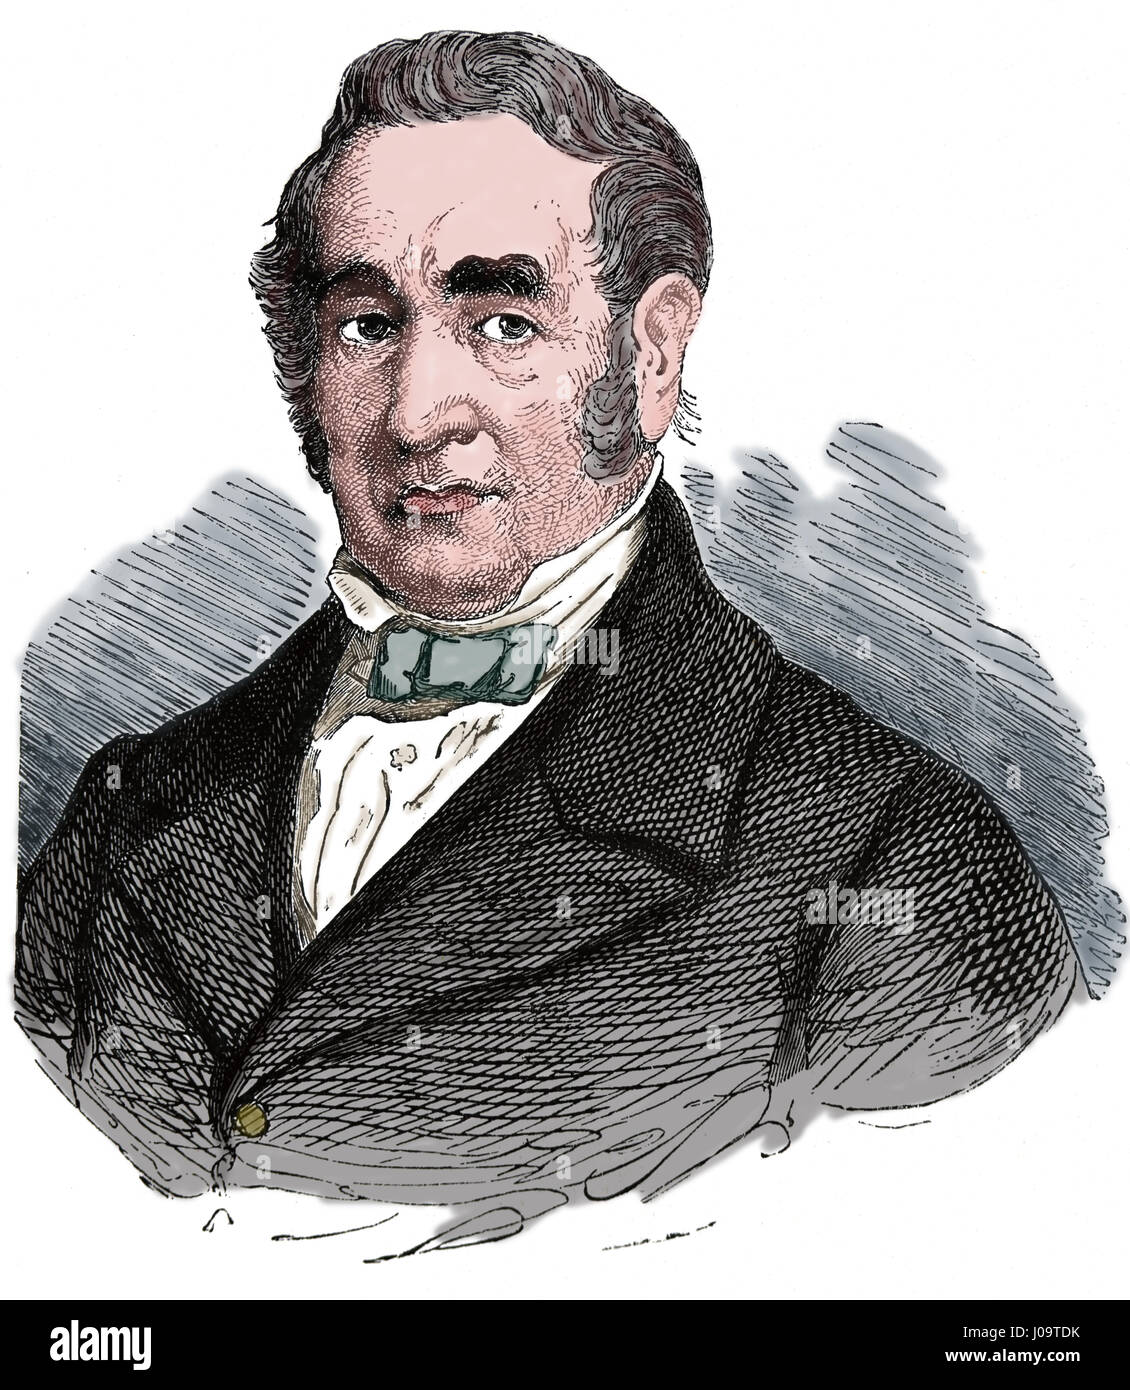 George Stephenson (1781-1848). Englischer Ingenieur. Väter der Eisenbahnen. Gravur, Nuestro Siglo, 1833. Stockfoto